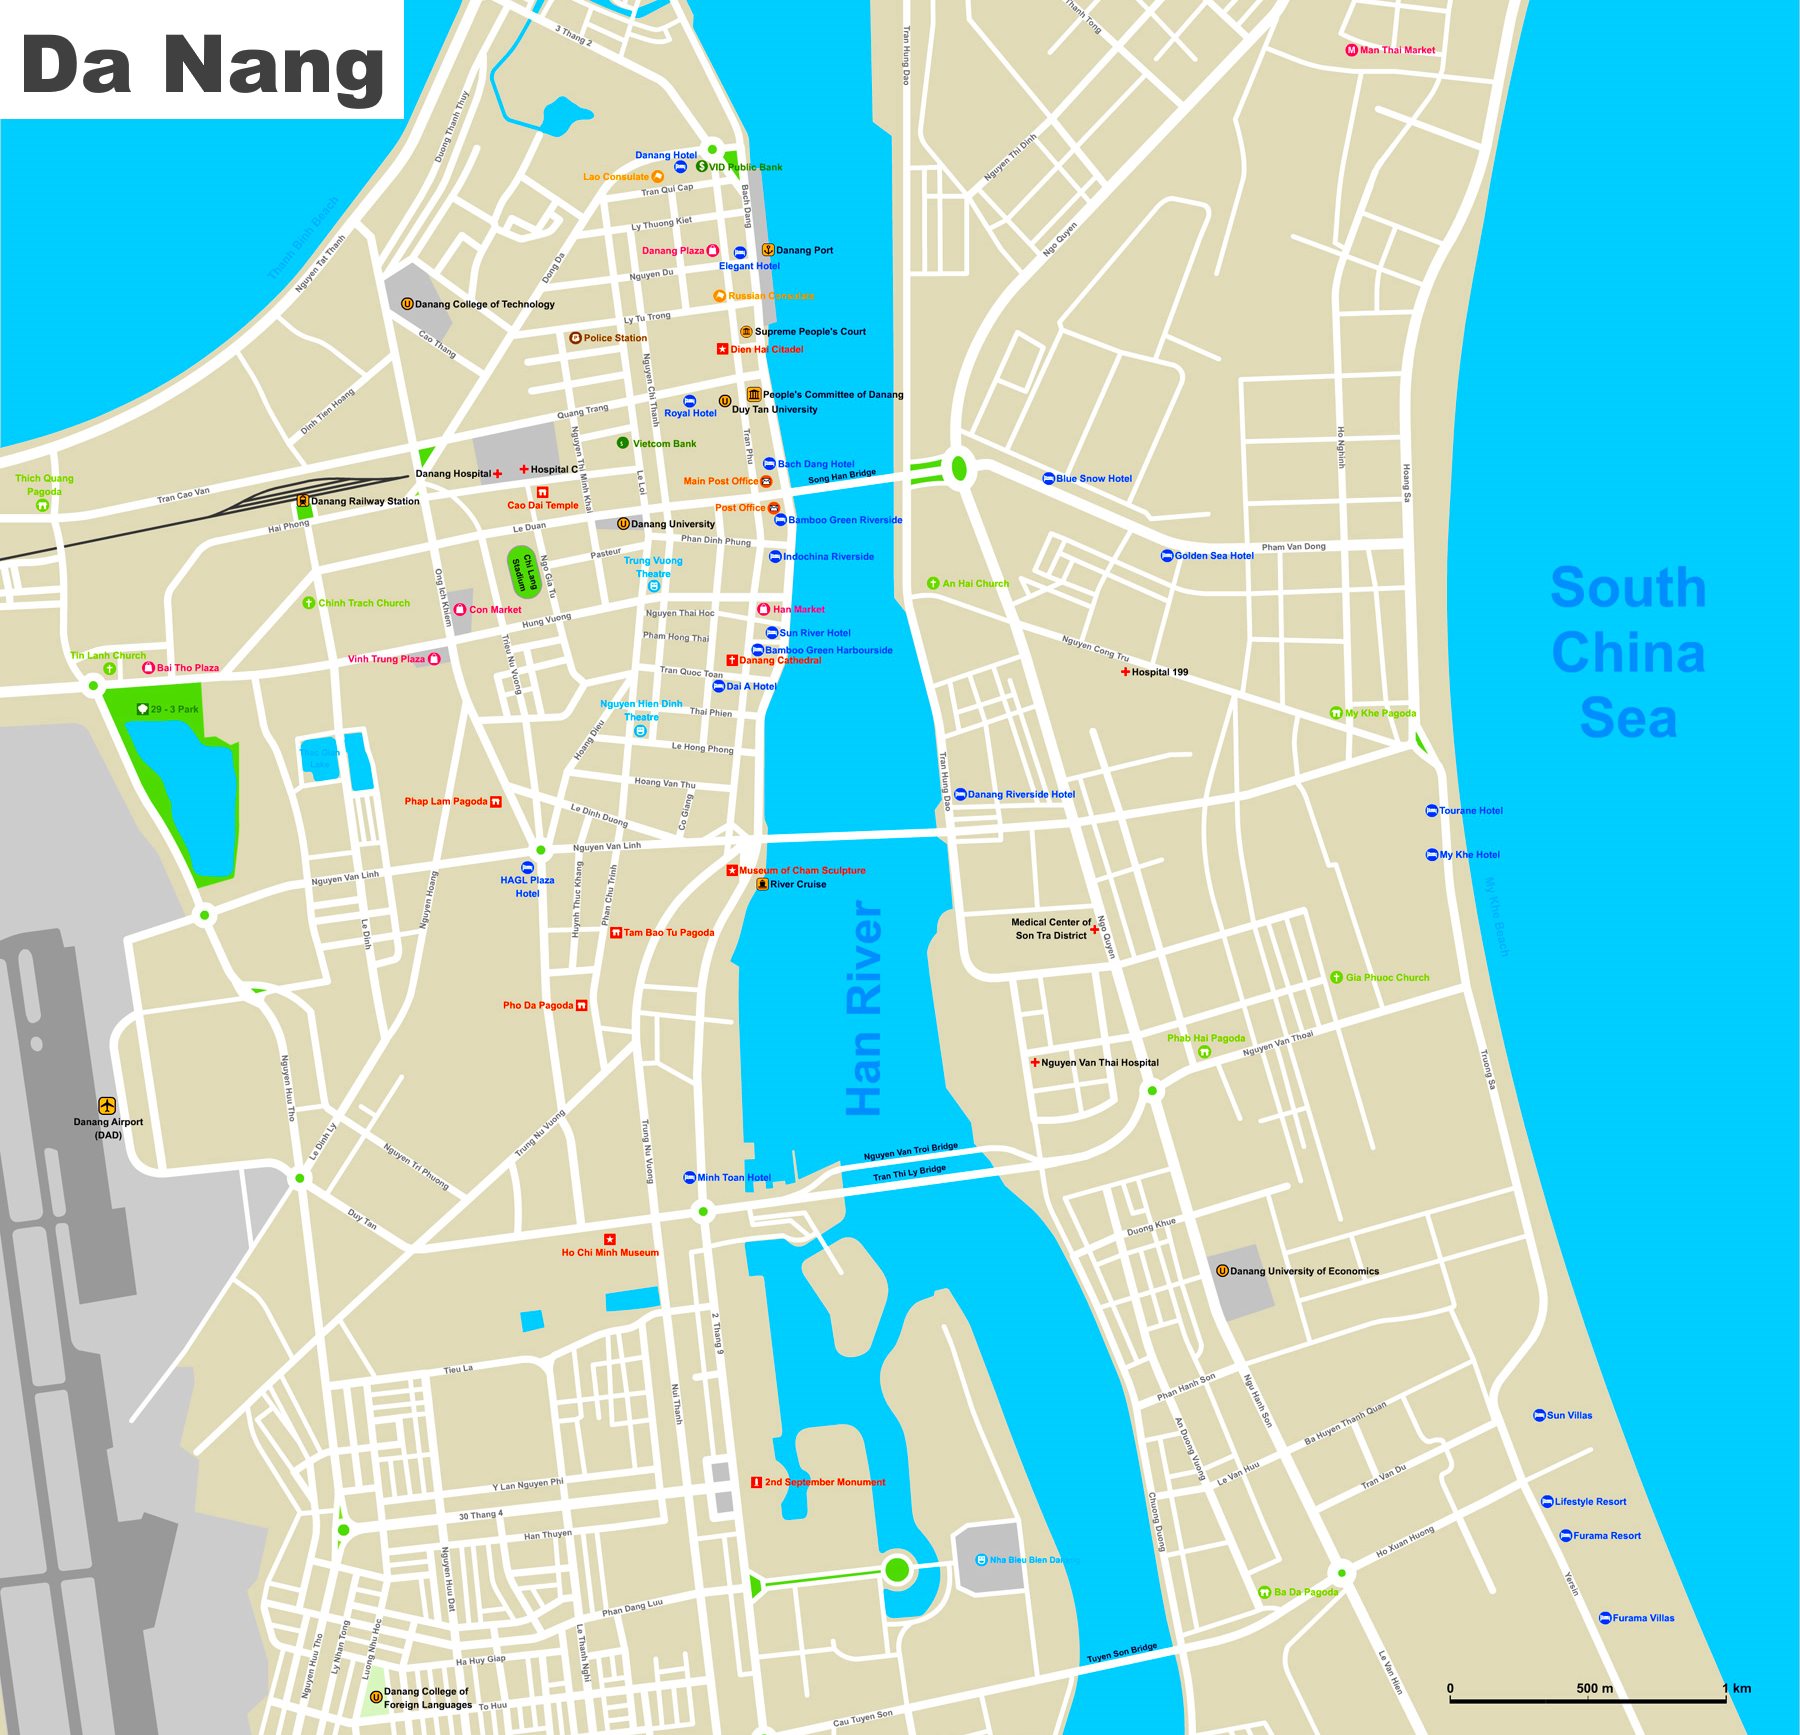 Da Nang Hotels And Sightseeings Map 